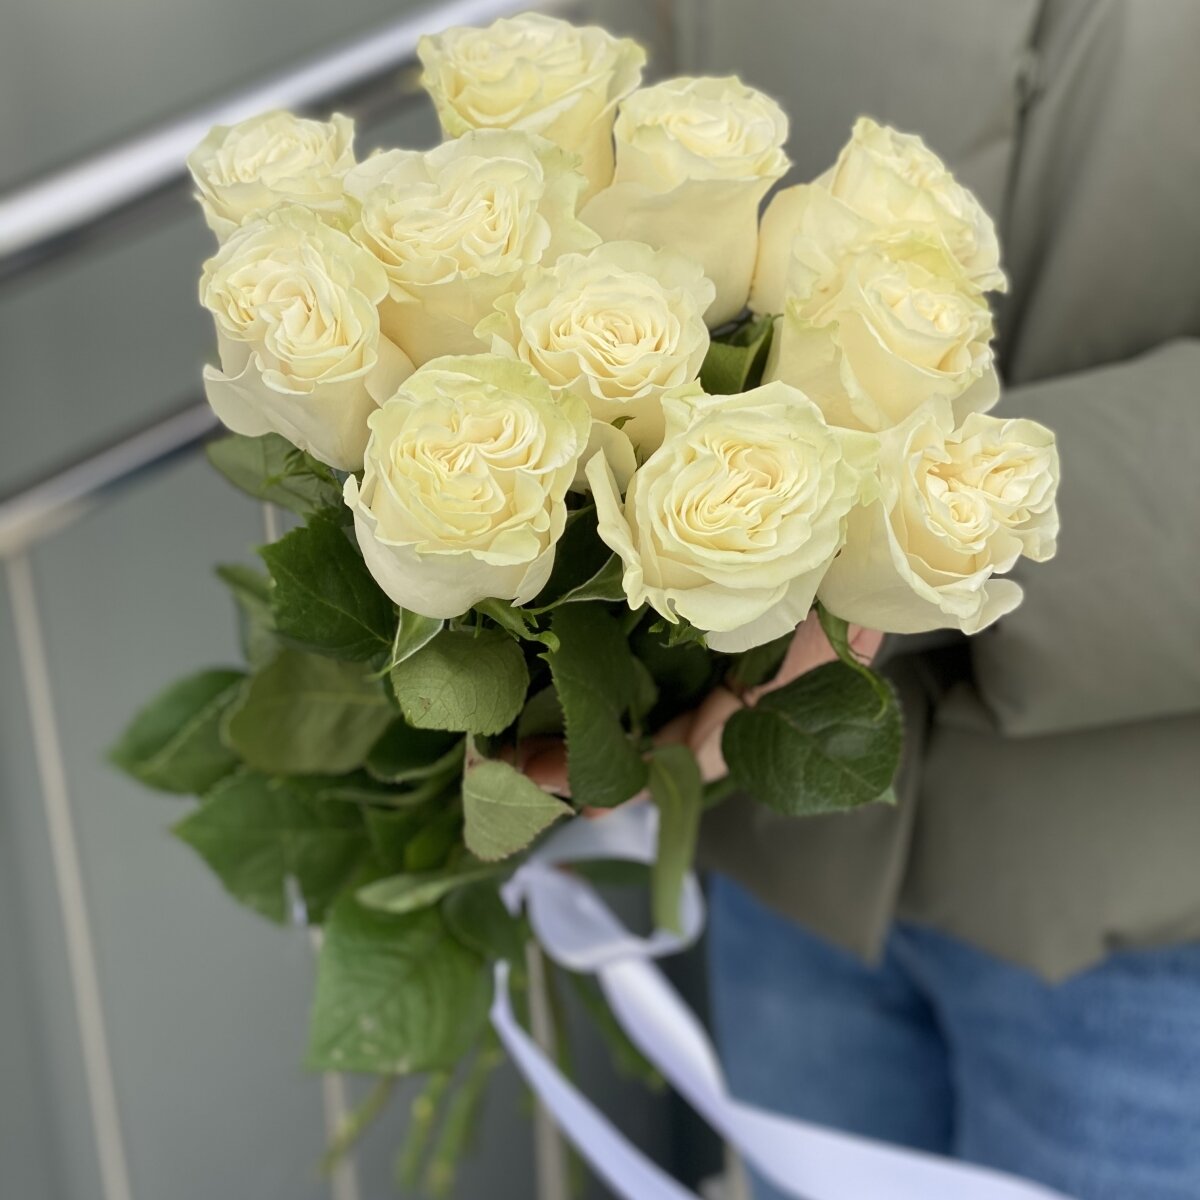 Букет из 11 белых роз